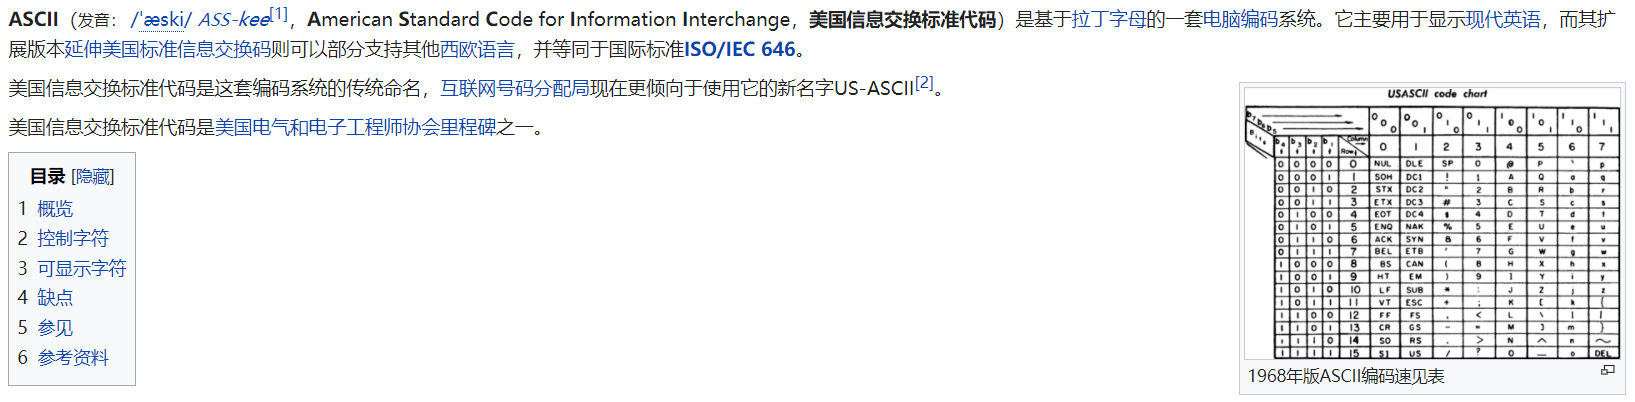 ASCII维基百科